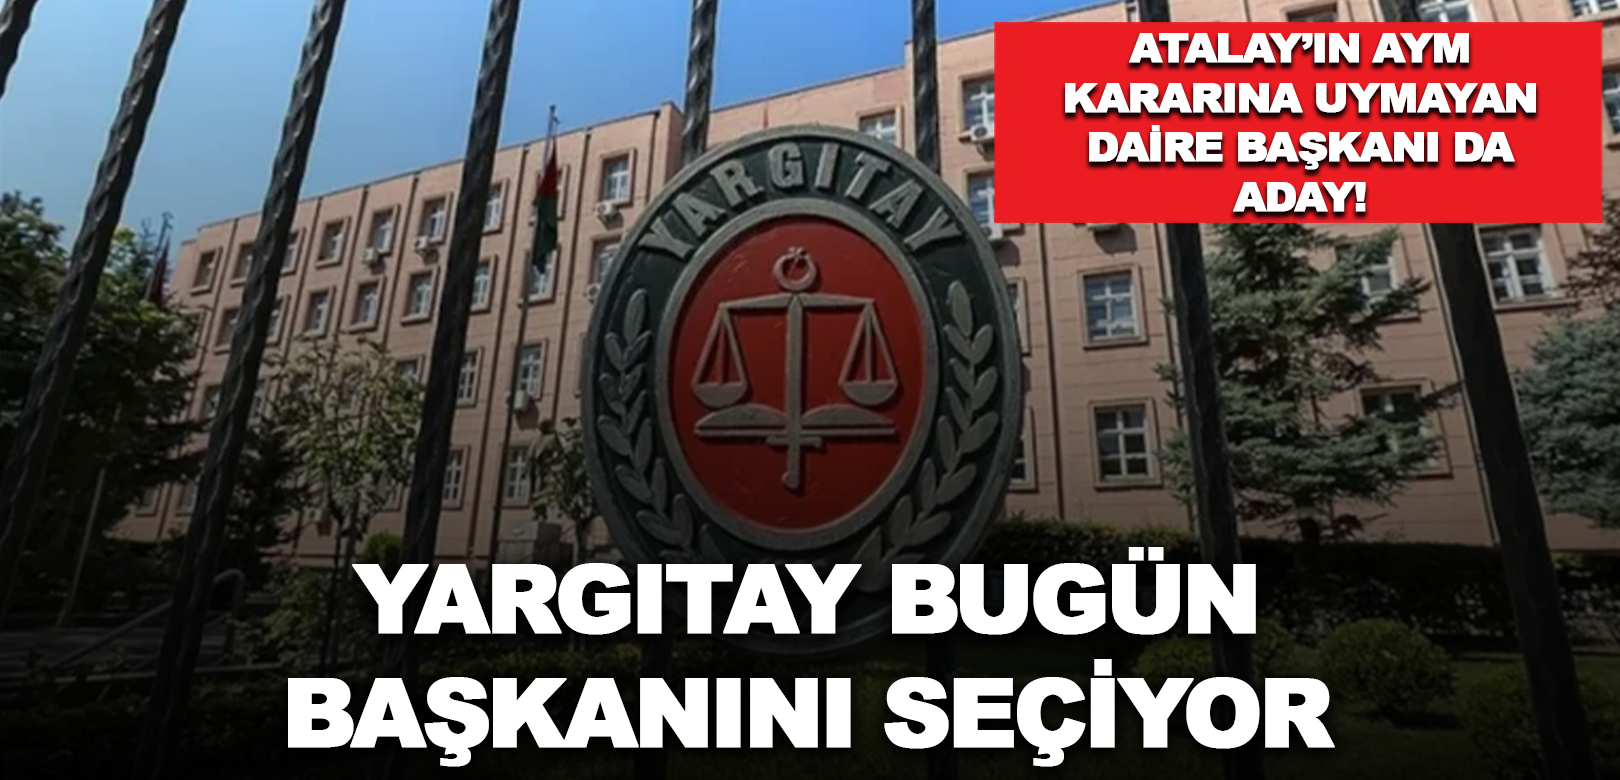 Yargıtay'da seçim günü: Can Atalay'ın AYM kararını tanımayan daire başkanı da aday!